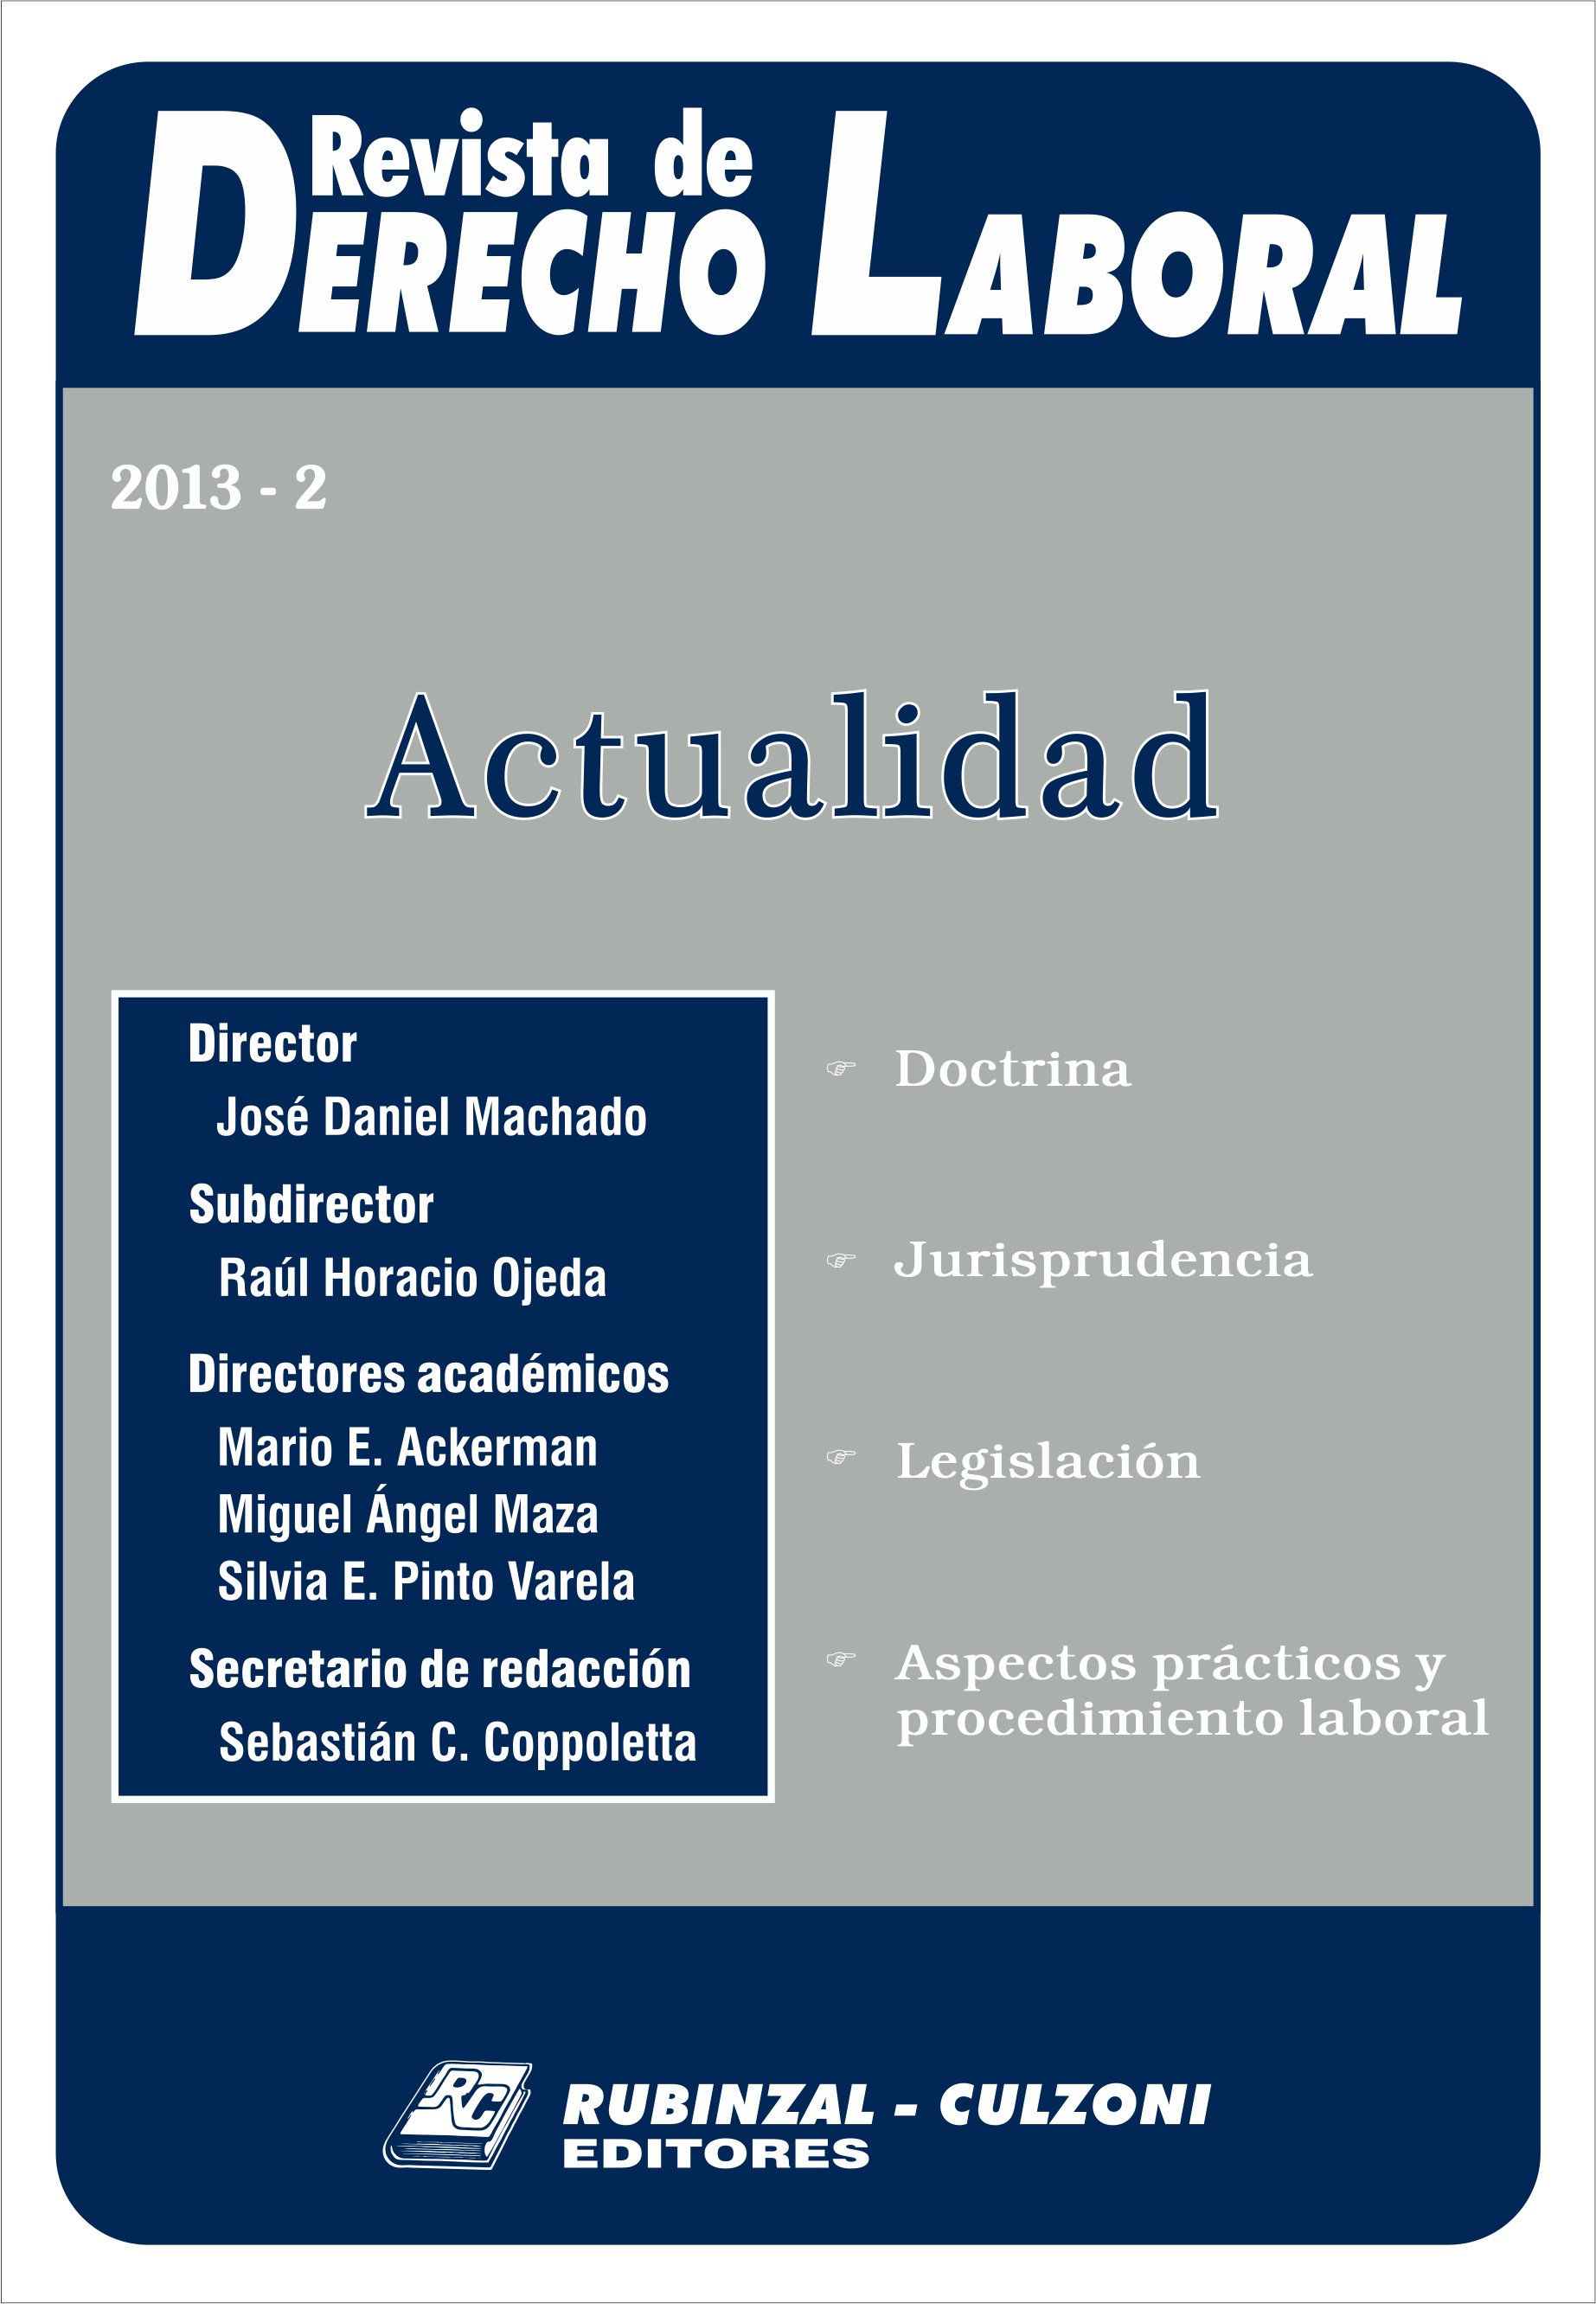 Revista de Derecho Laboral Actualidad - Año 2013 - 2.